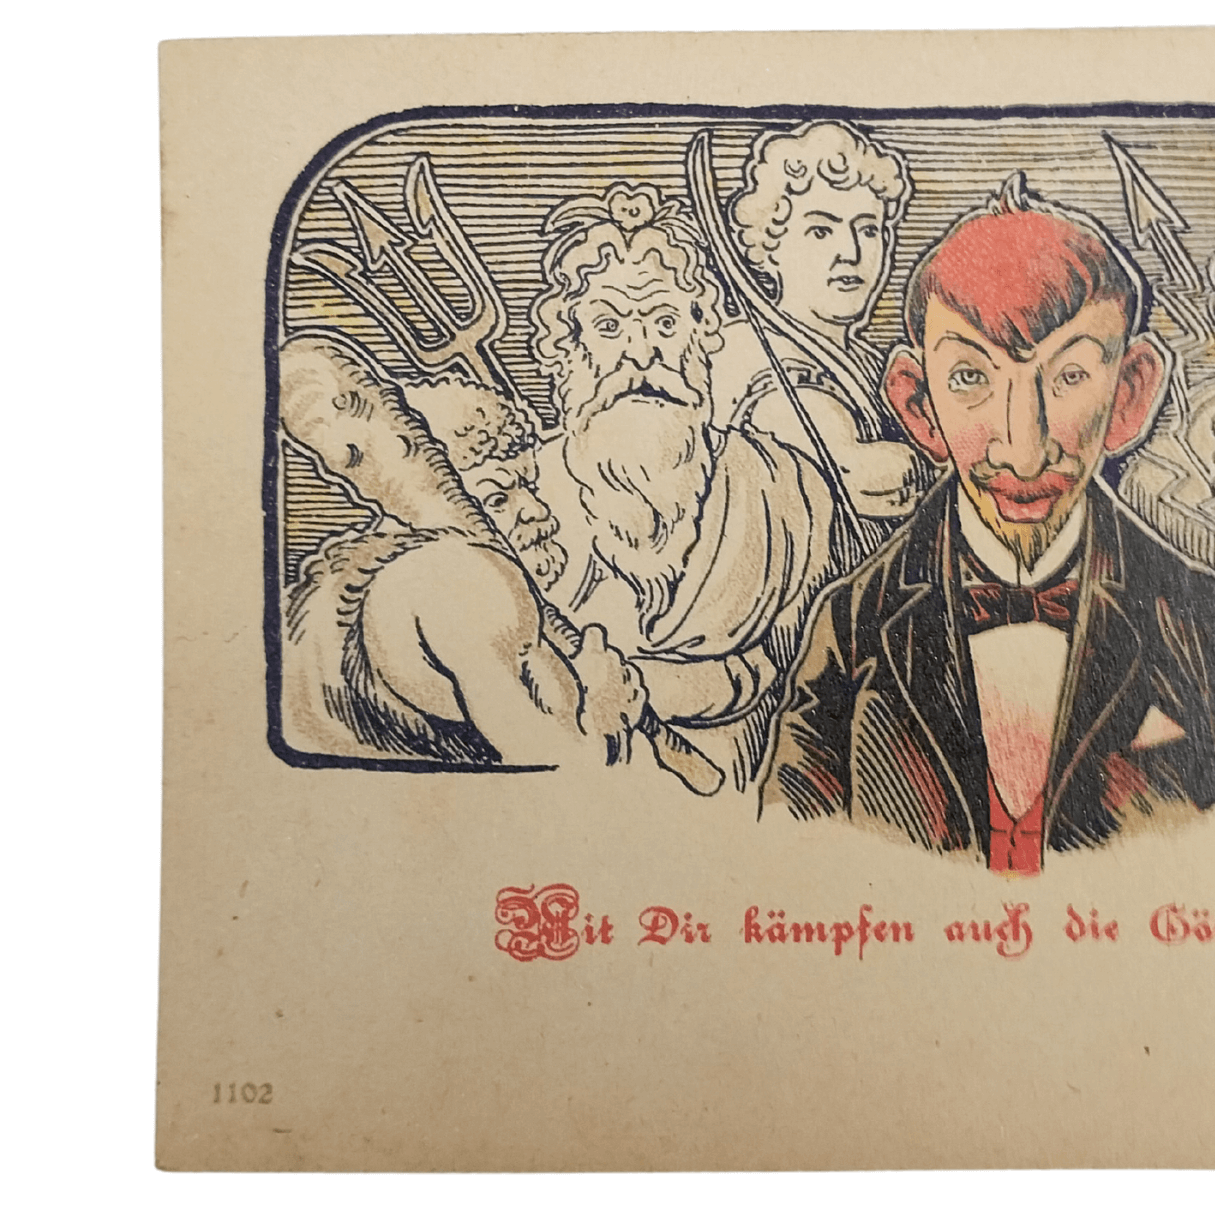 Cartão Postal Antigo Alemão de Ano Novo (Prosit Neujahr) - Deuses